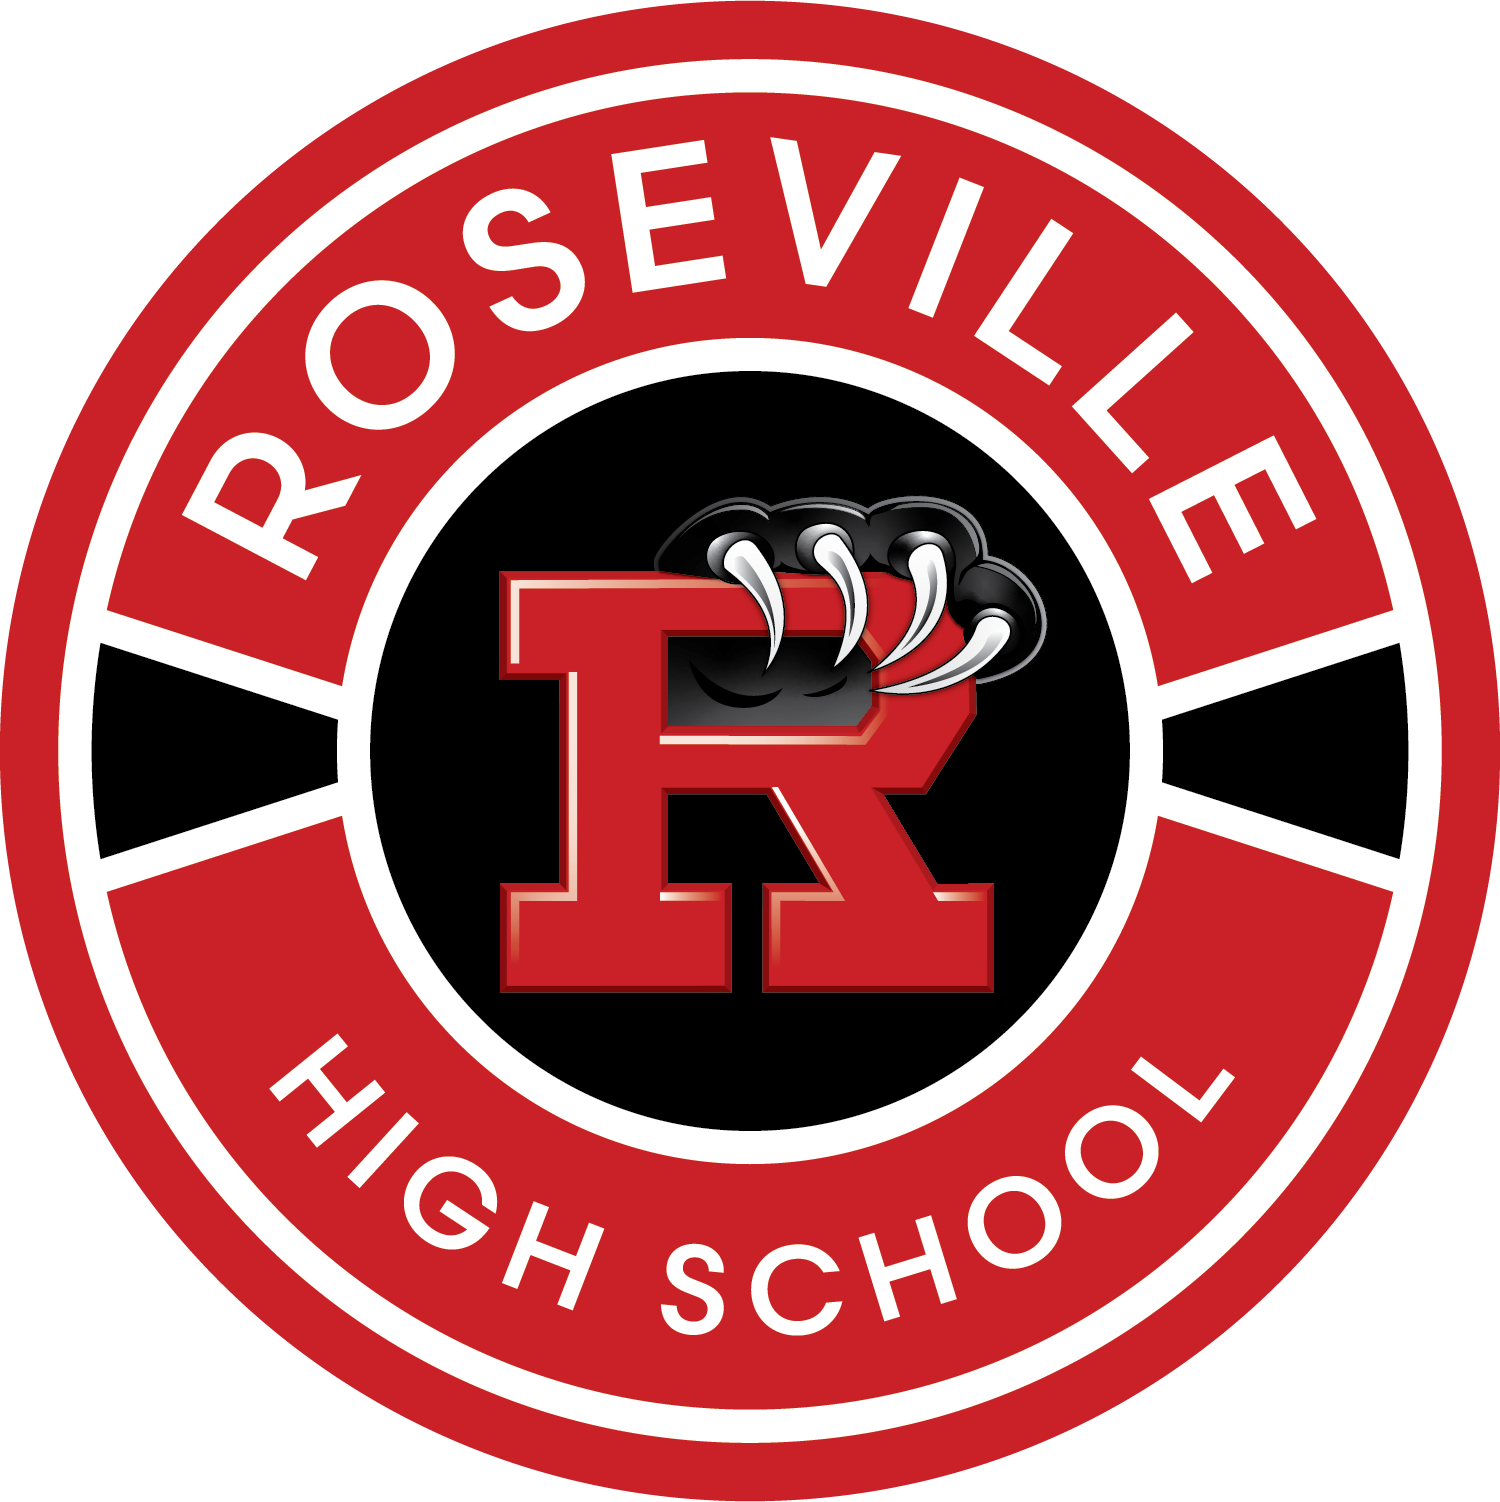 Roseville High School